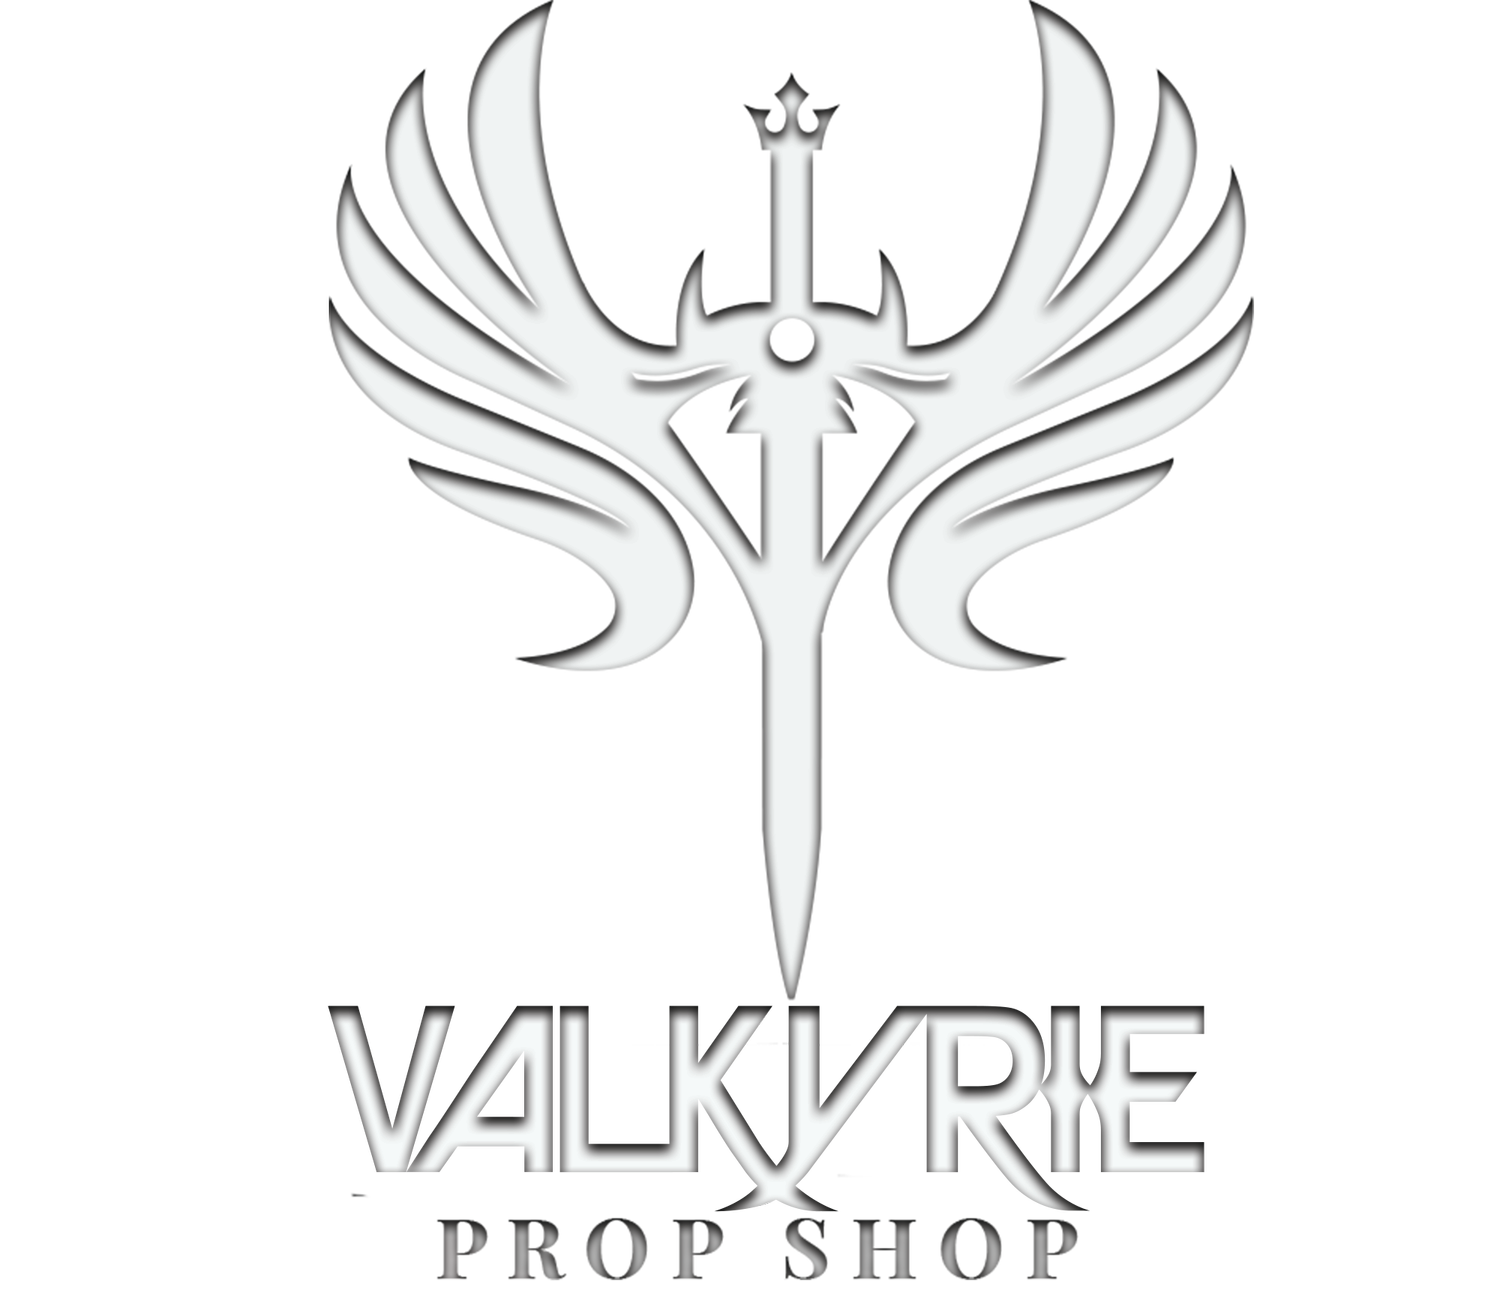 Valkyrie Prop Shop